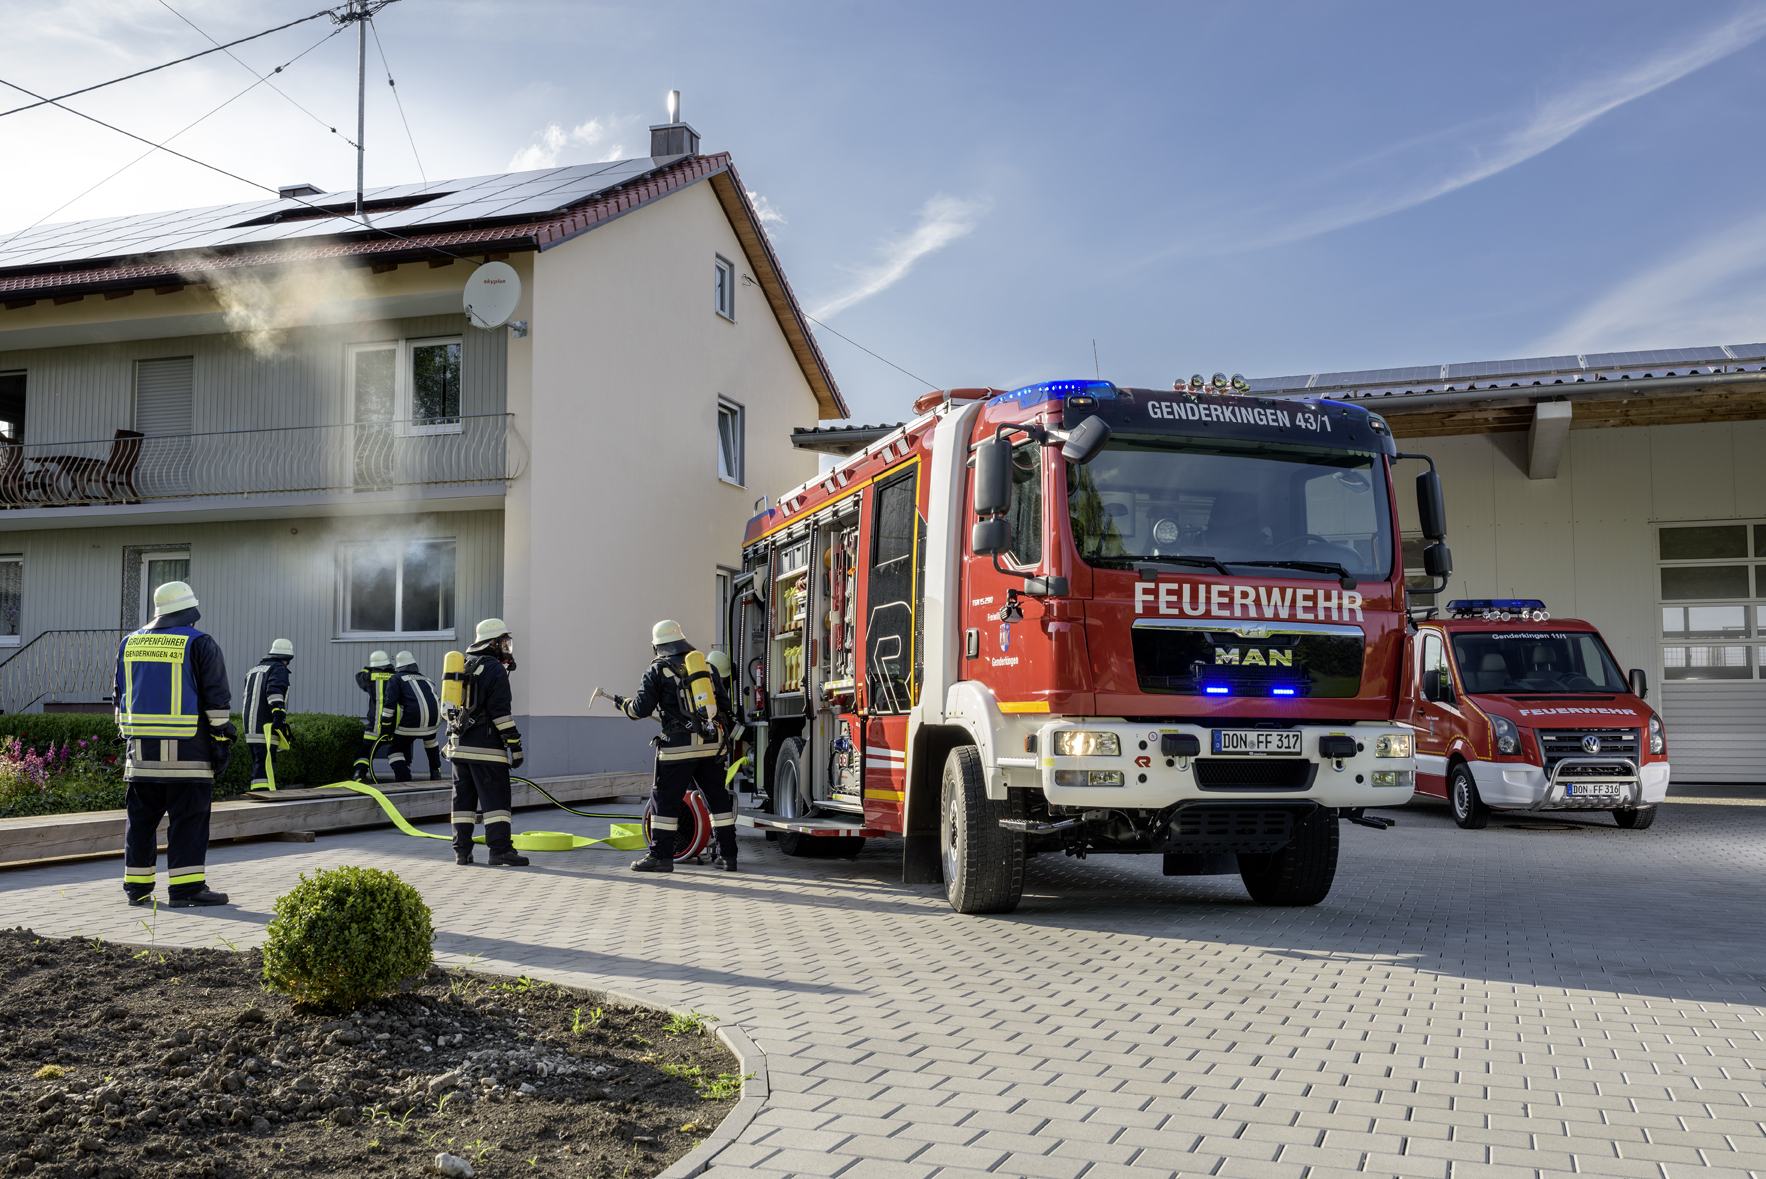 Dachaufsetzer Feuerwehr im Einsatz - Feuerwehr Neuburg an der Donau